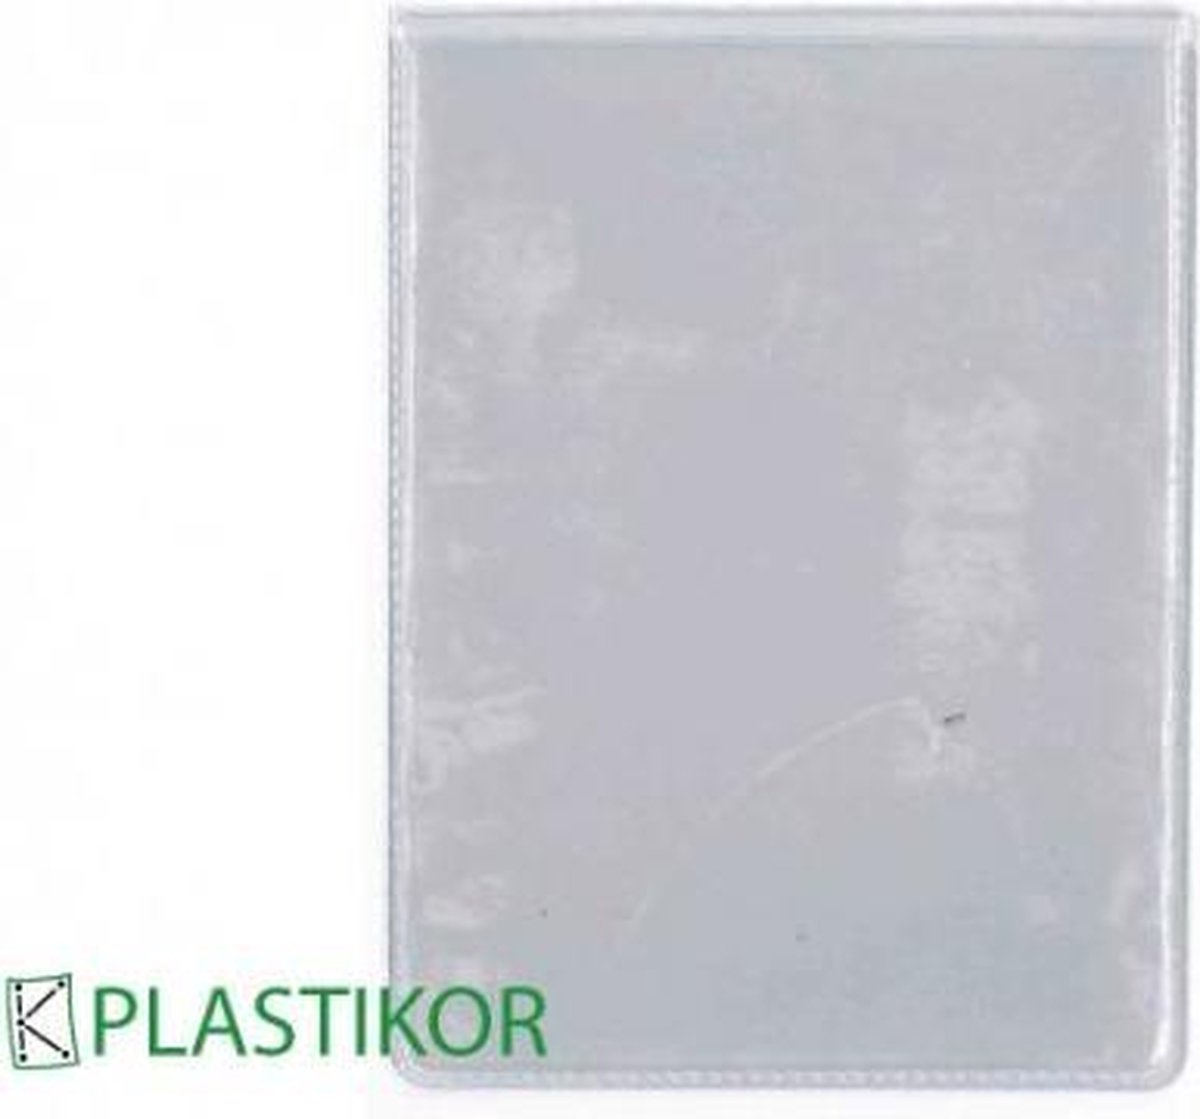 Alsjeblieft kijk bord kwaadheid de vrije loop geven Plastic insteekhoezen A6 KB, 114x155mm - 50 stuks | bol.com